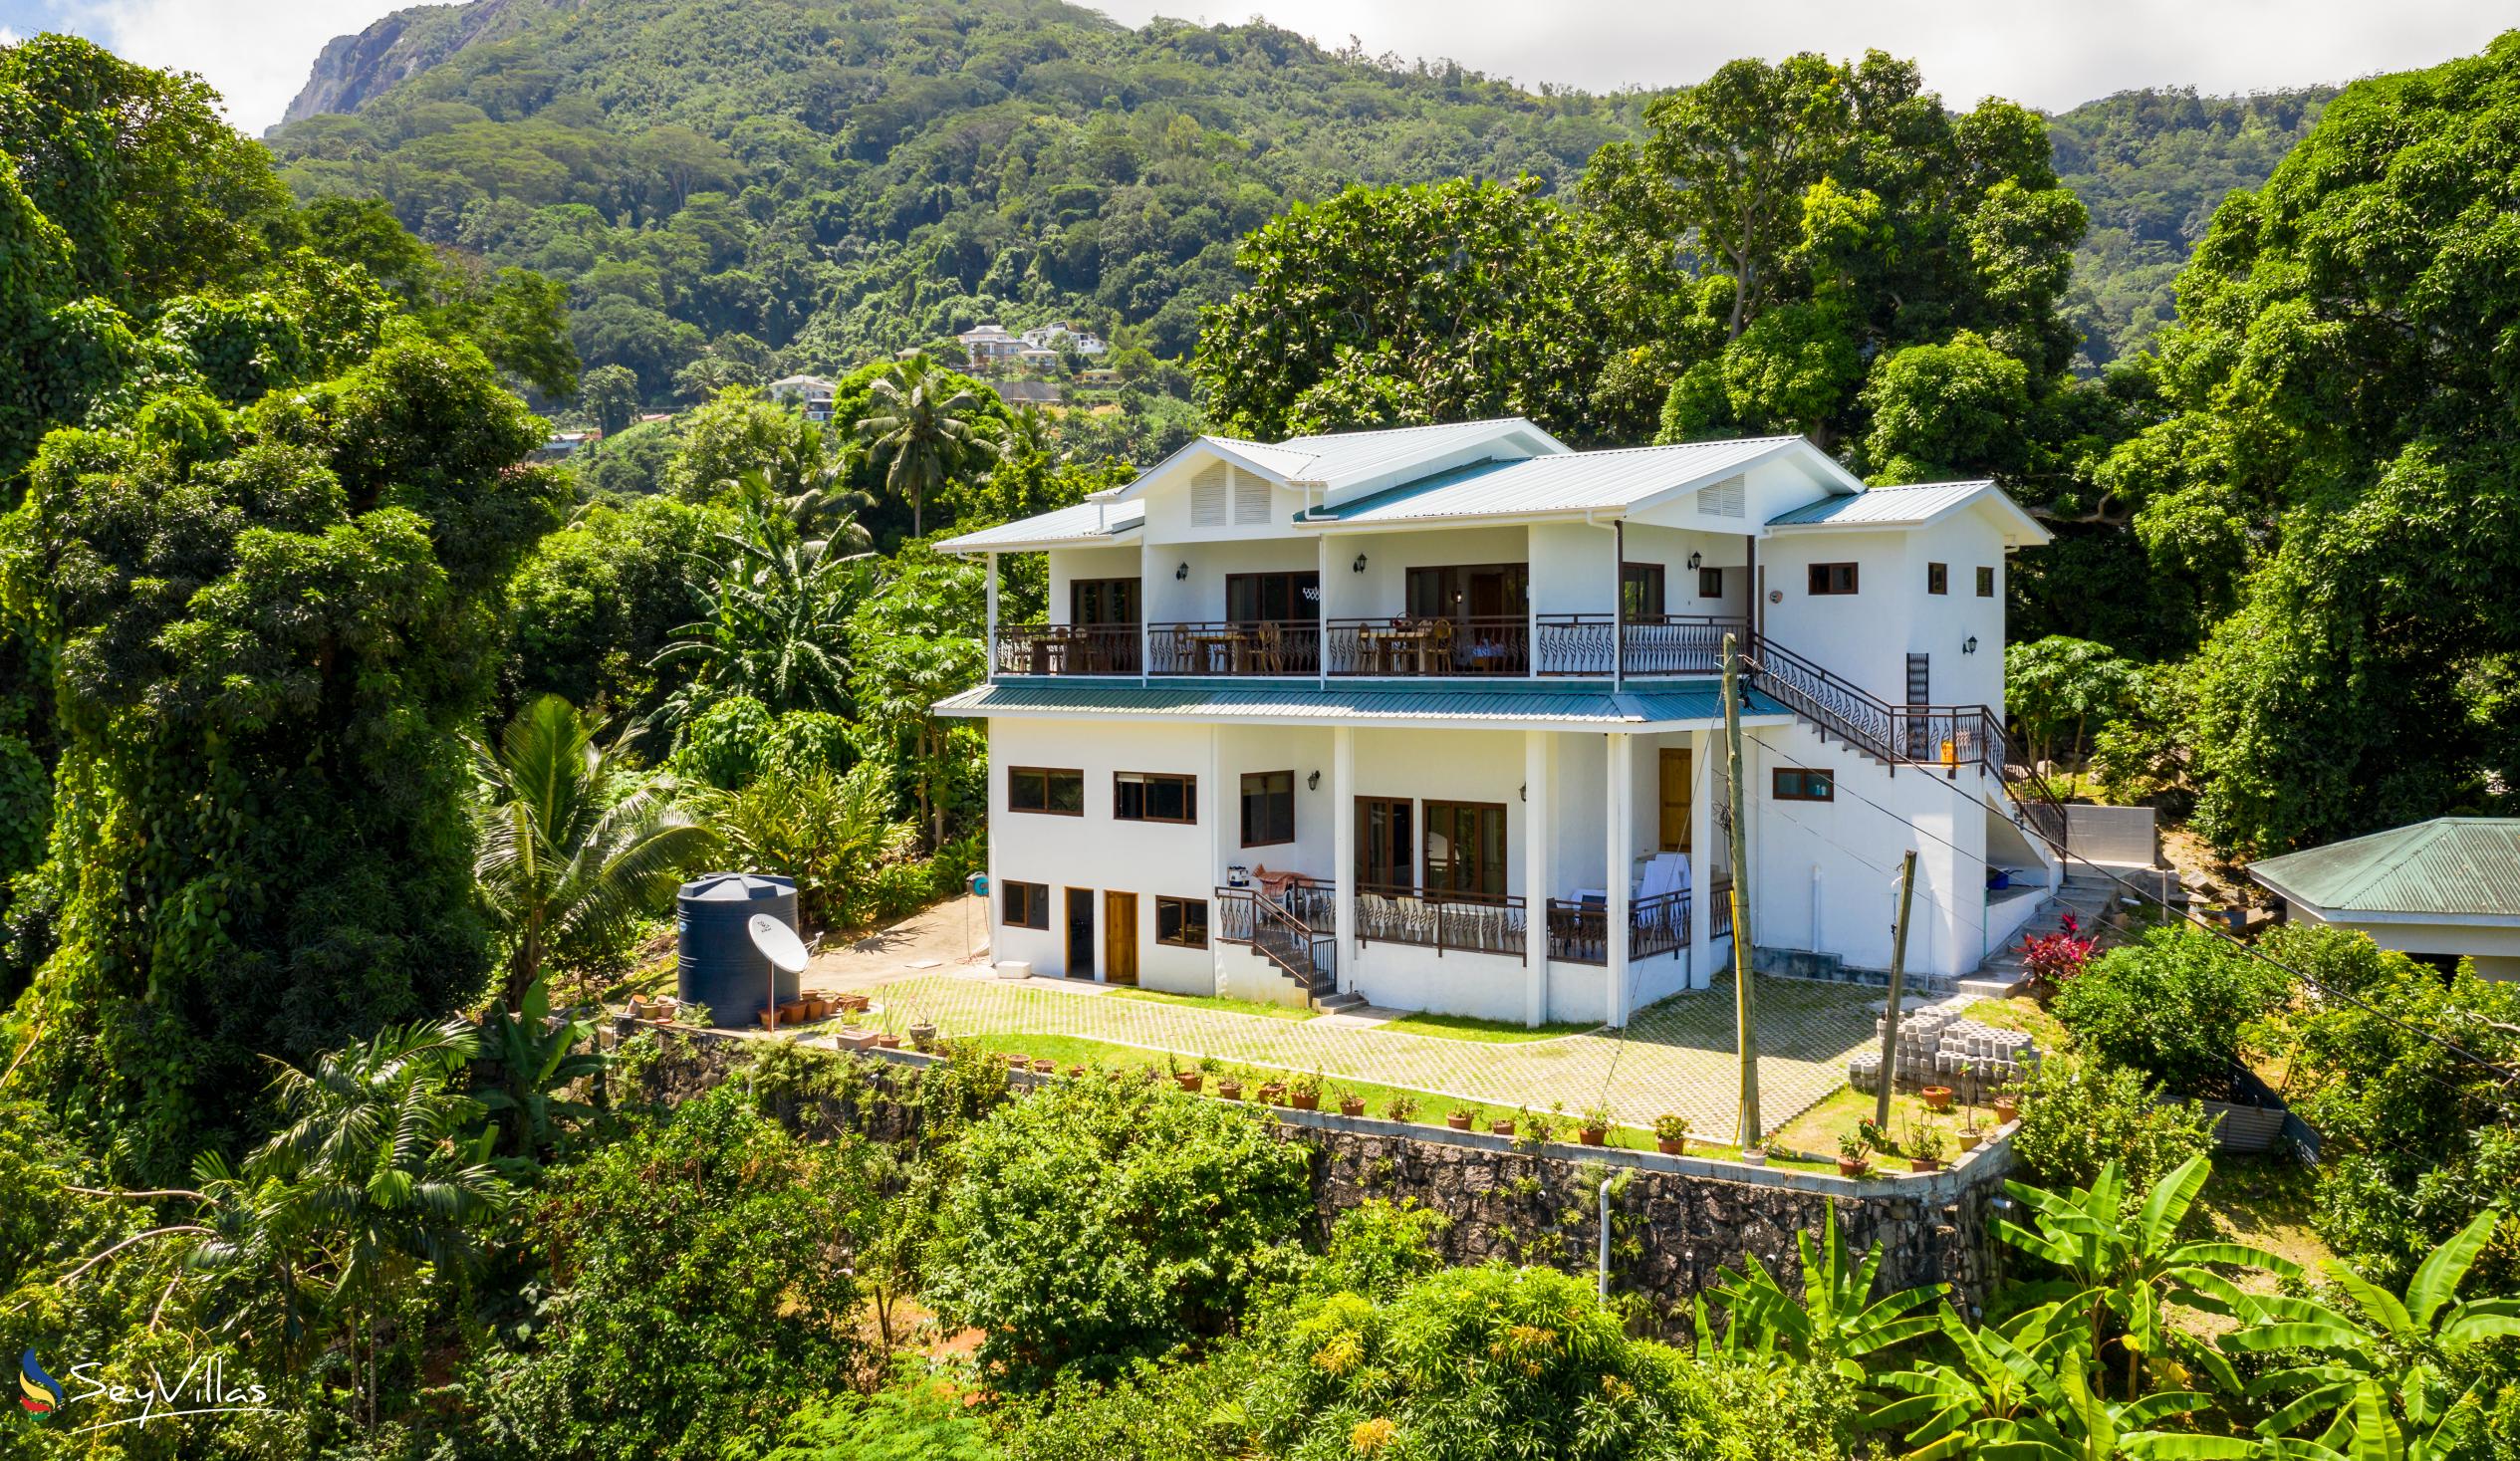 Photo 5: Tama's Holiday Apartments - Outdoor area - Mahé (Seychelles)